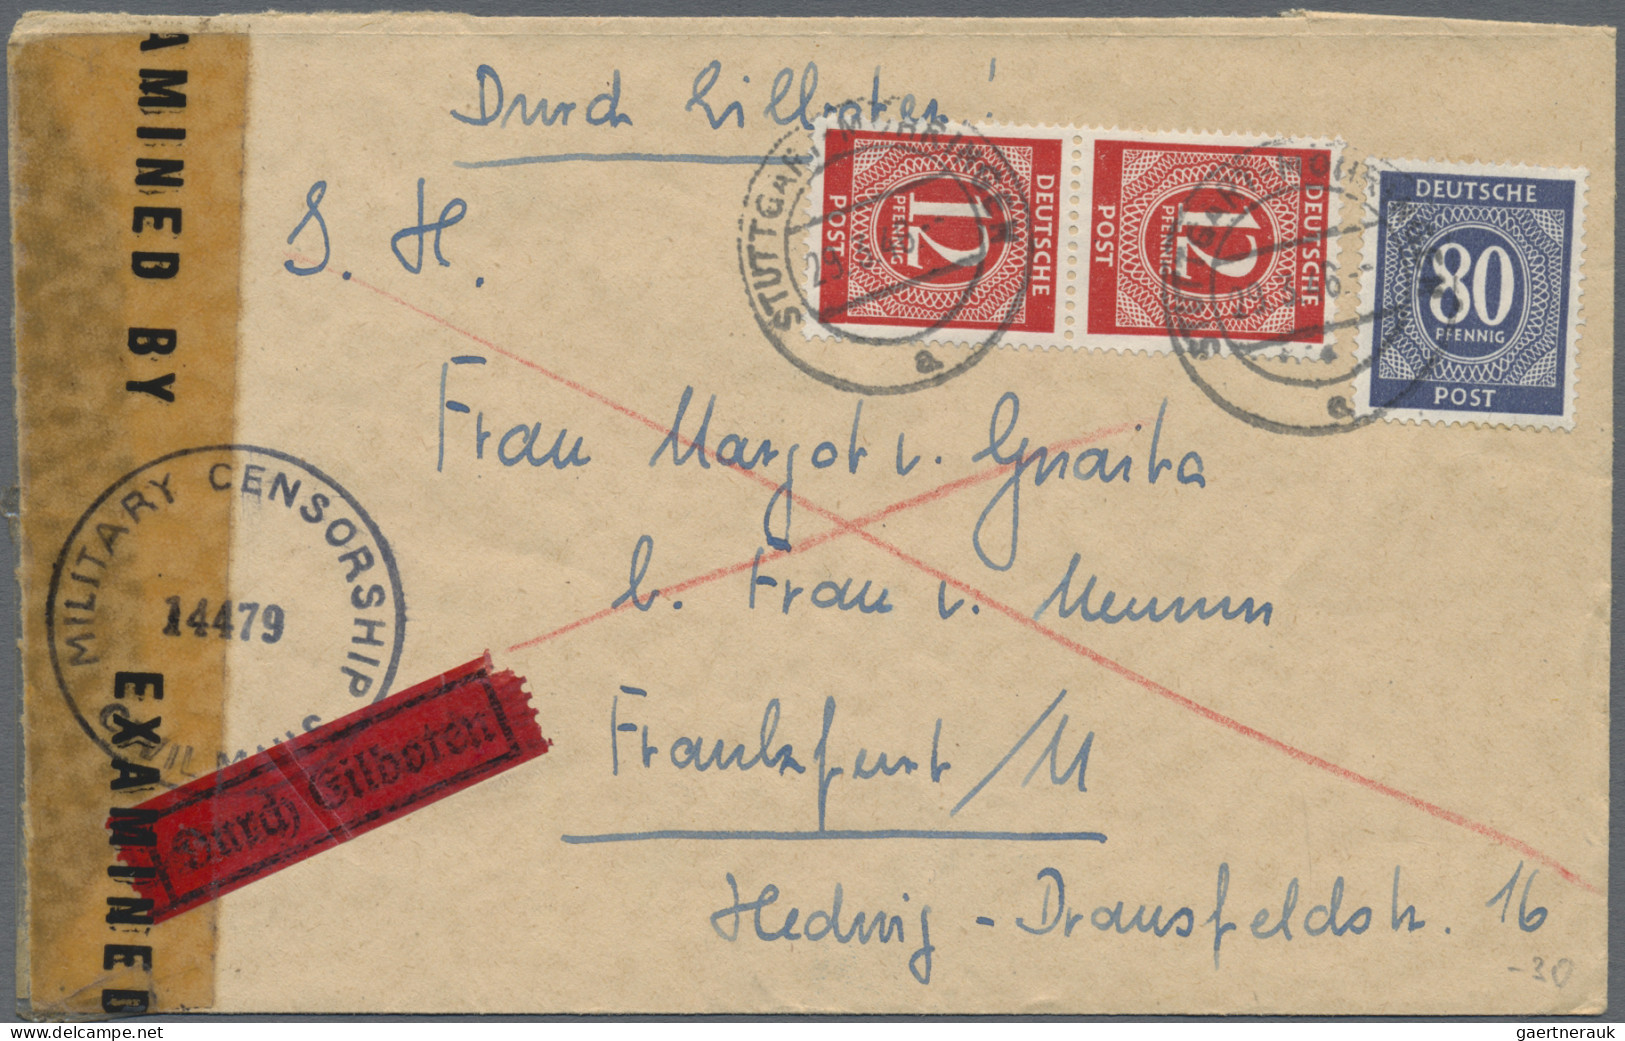 Zensurpost: 1945/1948, Partie von ca. 107 Briefen und Karten mit alliierter Zens